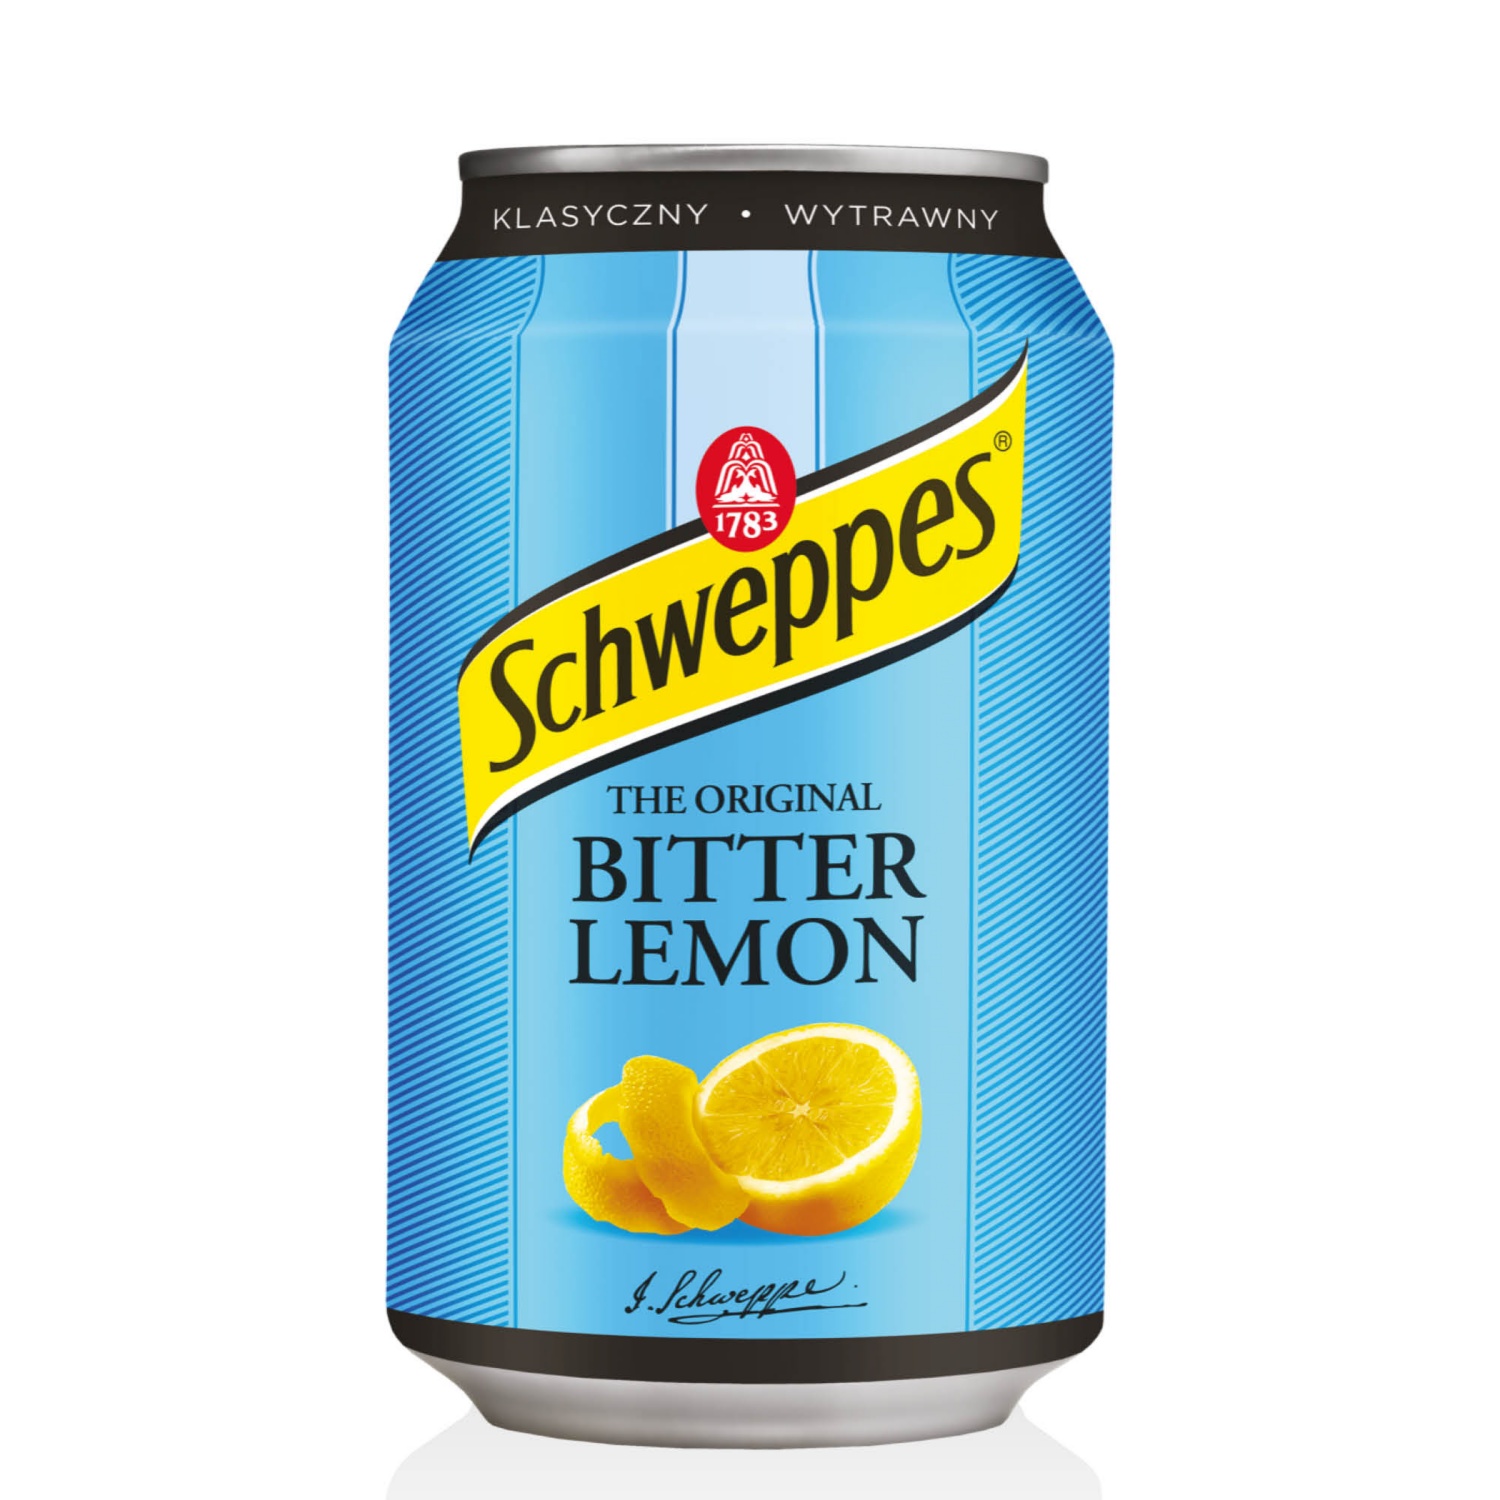 SCHWEPPES Szénsavas üdítőital, Bitter lemon 0,33 l